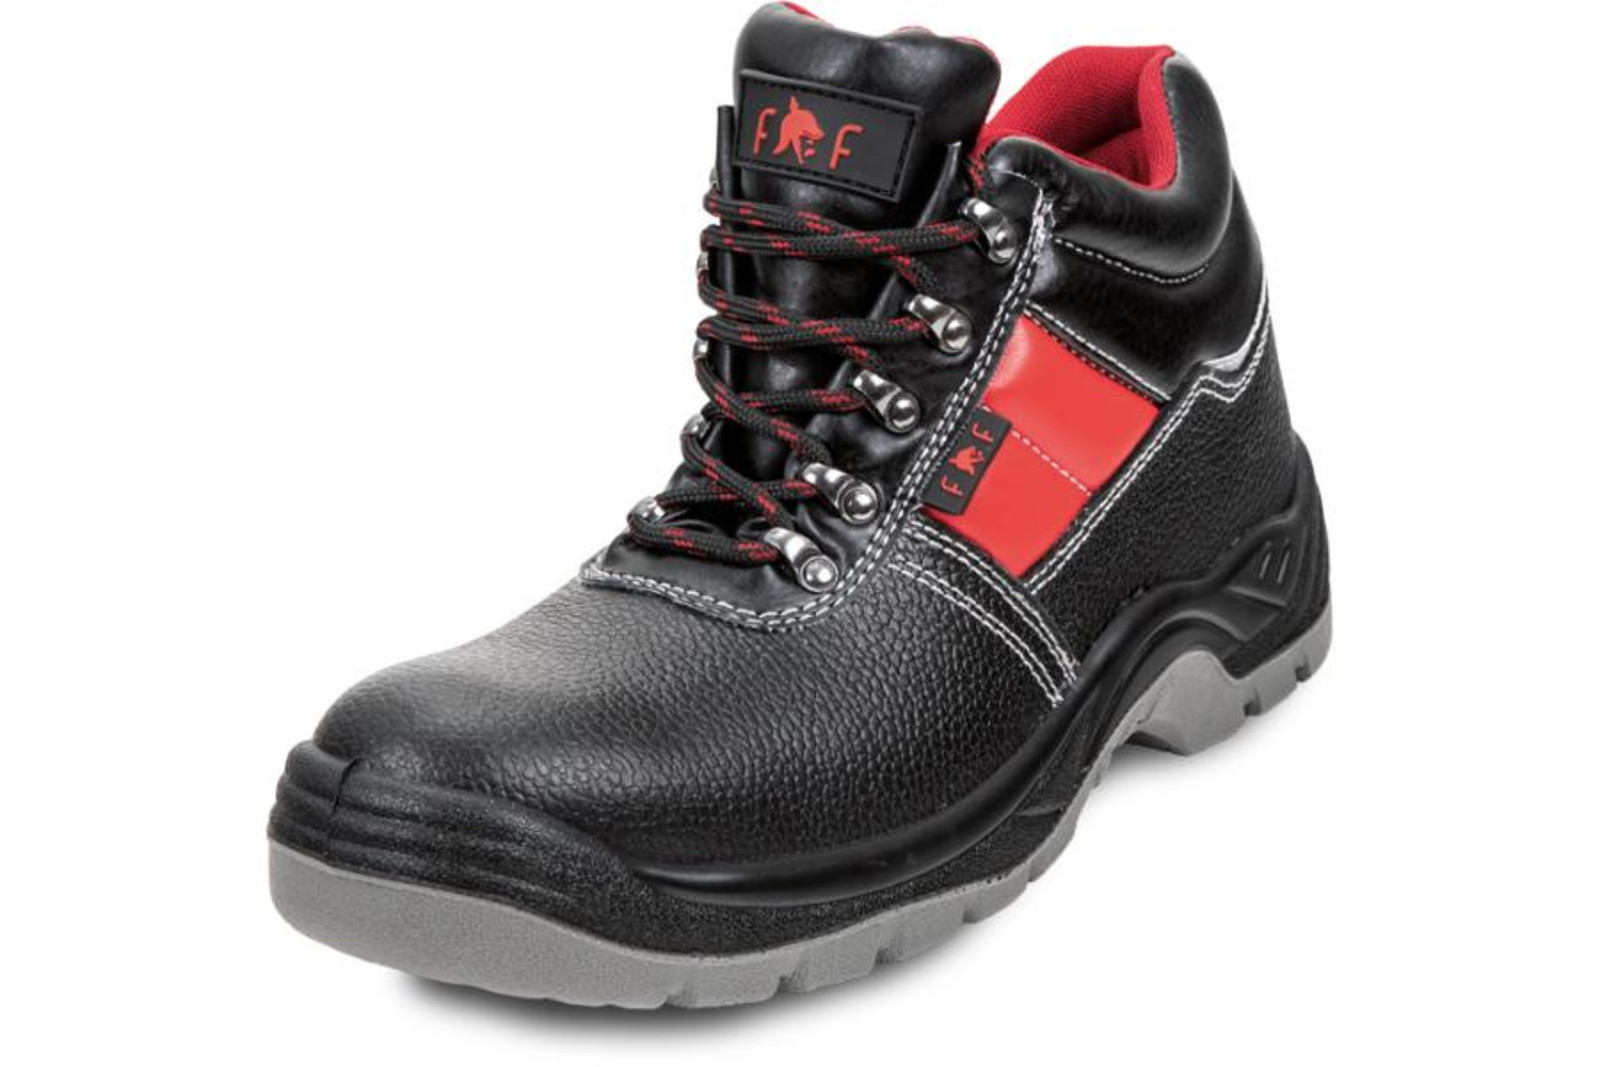 Bezpečnostná obuv SC 03-003 S3 - veľkosť: 39, farba: čierna